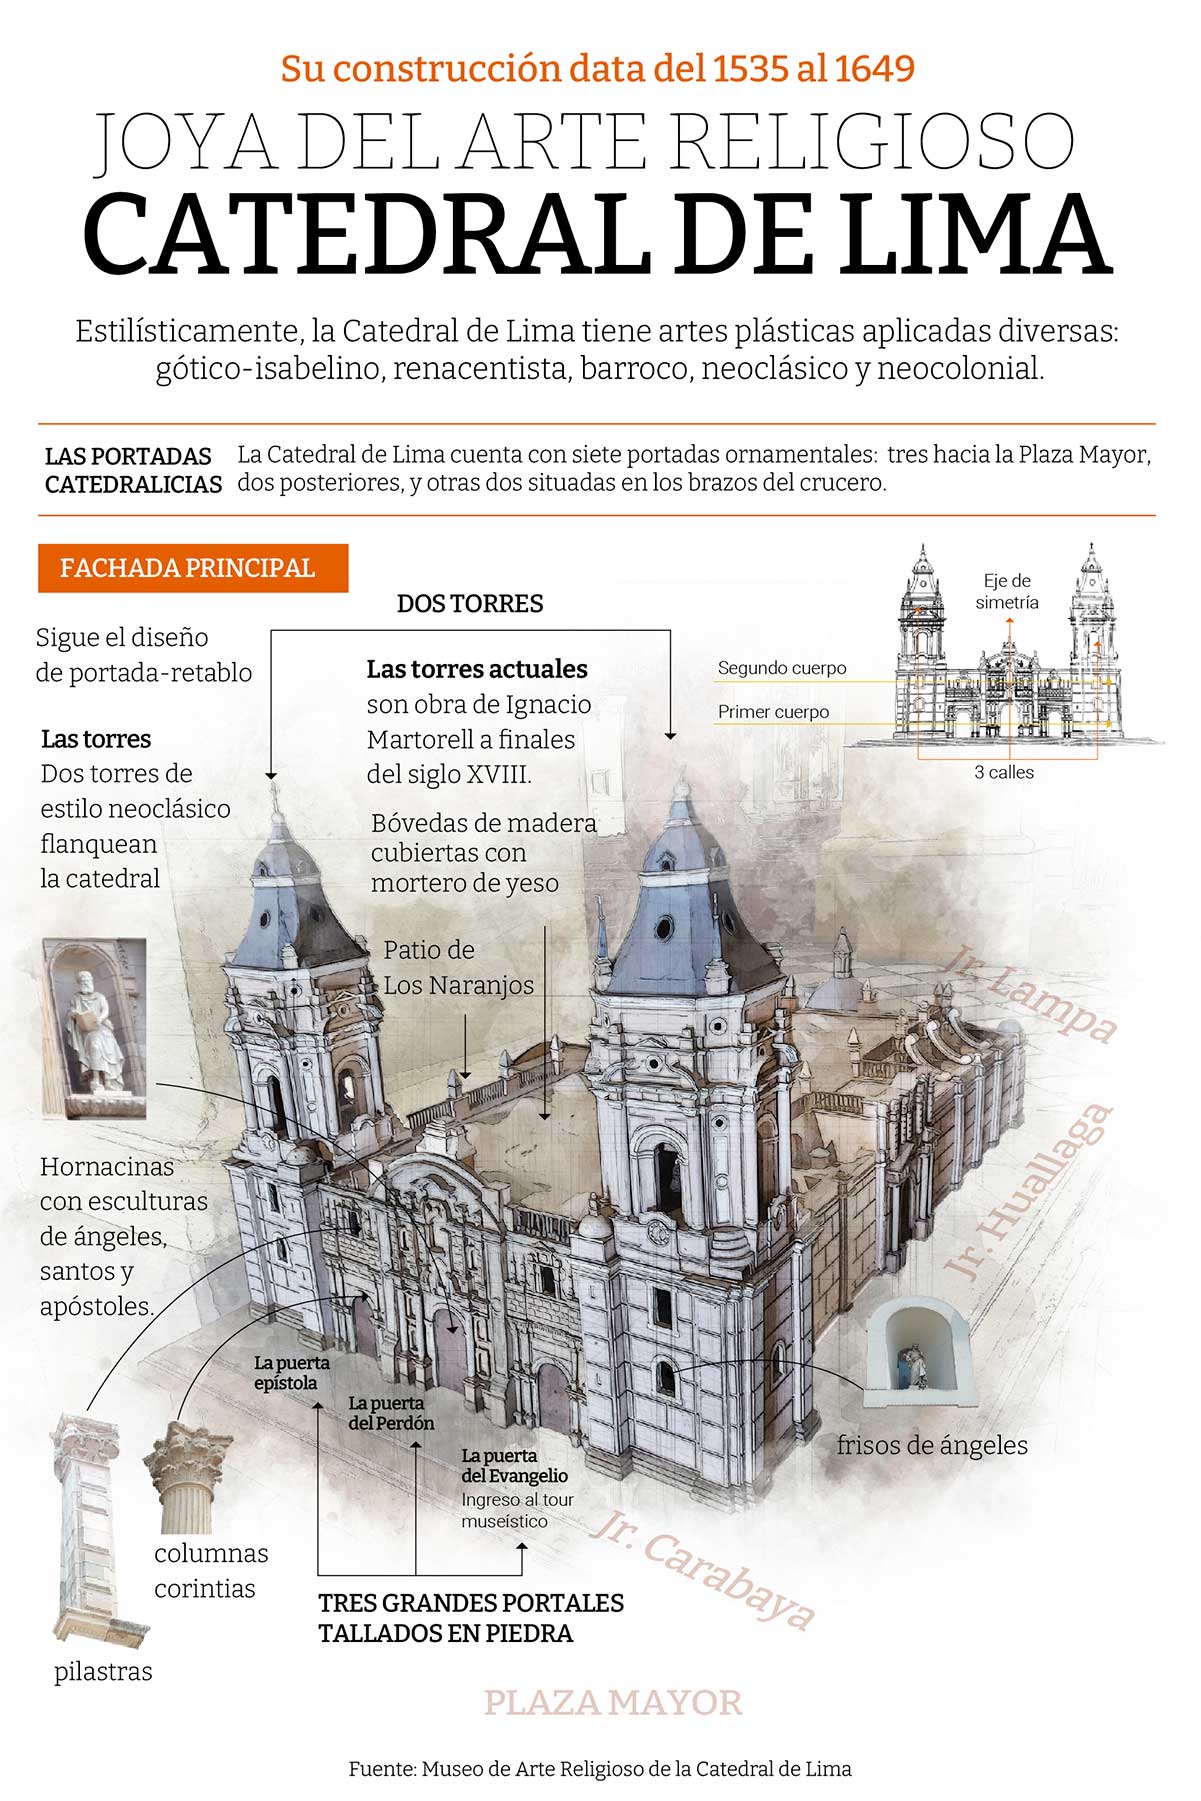 Información general de la arquitectura de la Catedral de Lima.